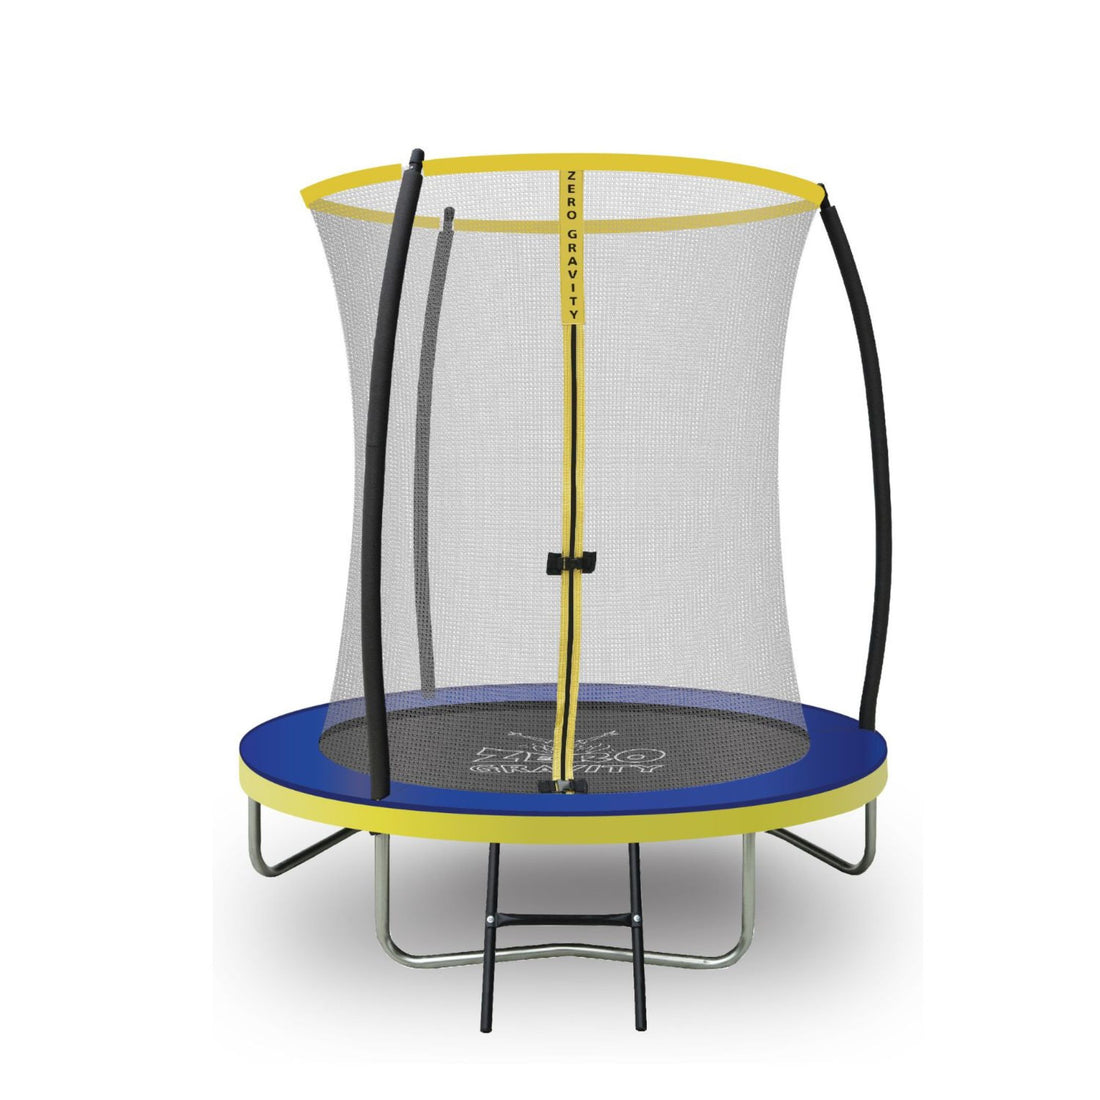 Trampolin (blau-gelb) Ø183cm inkl. Leiter - Nutzer bis 50kg - Ideal für ein Kind